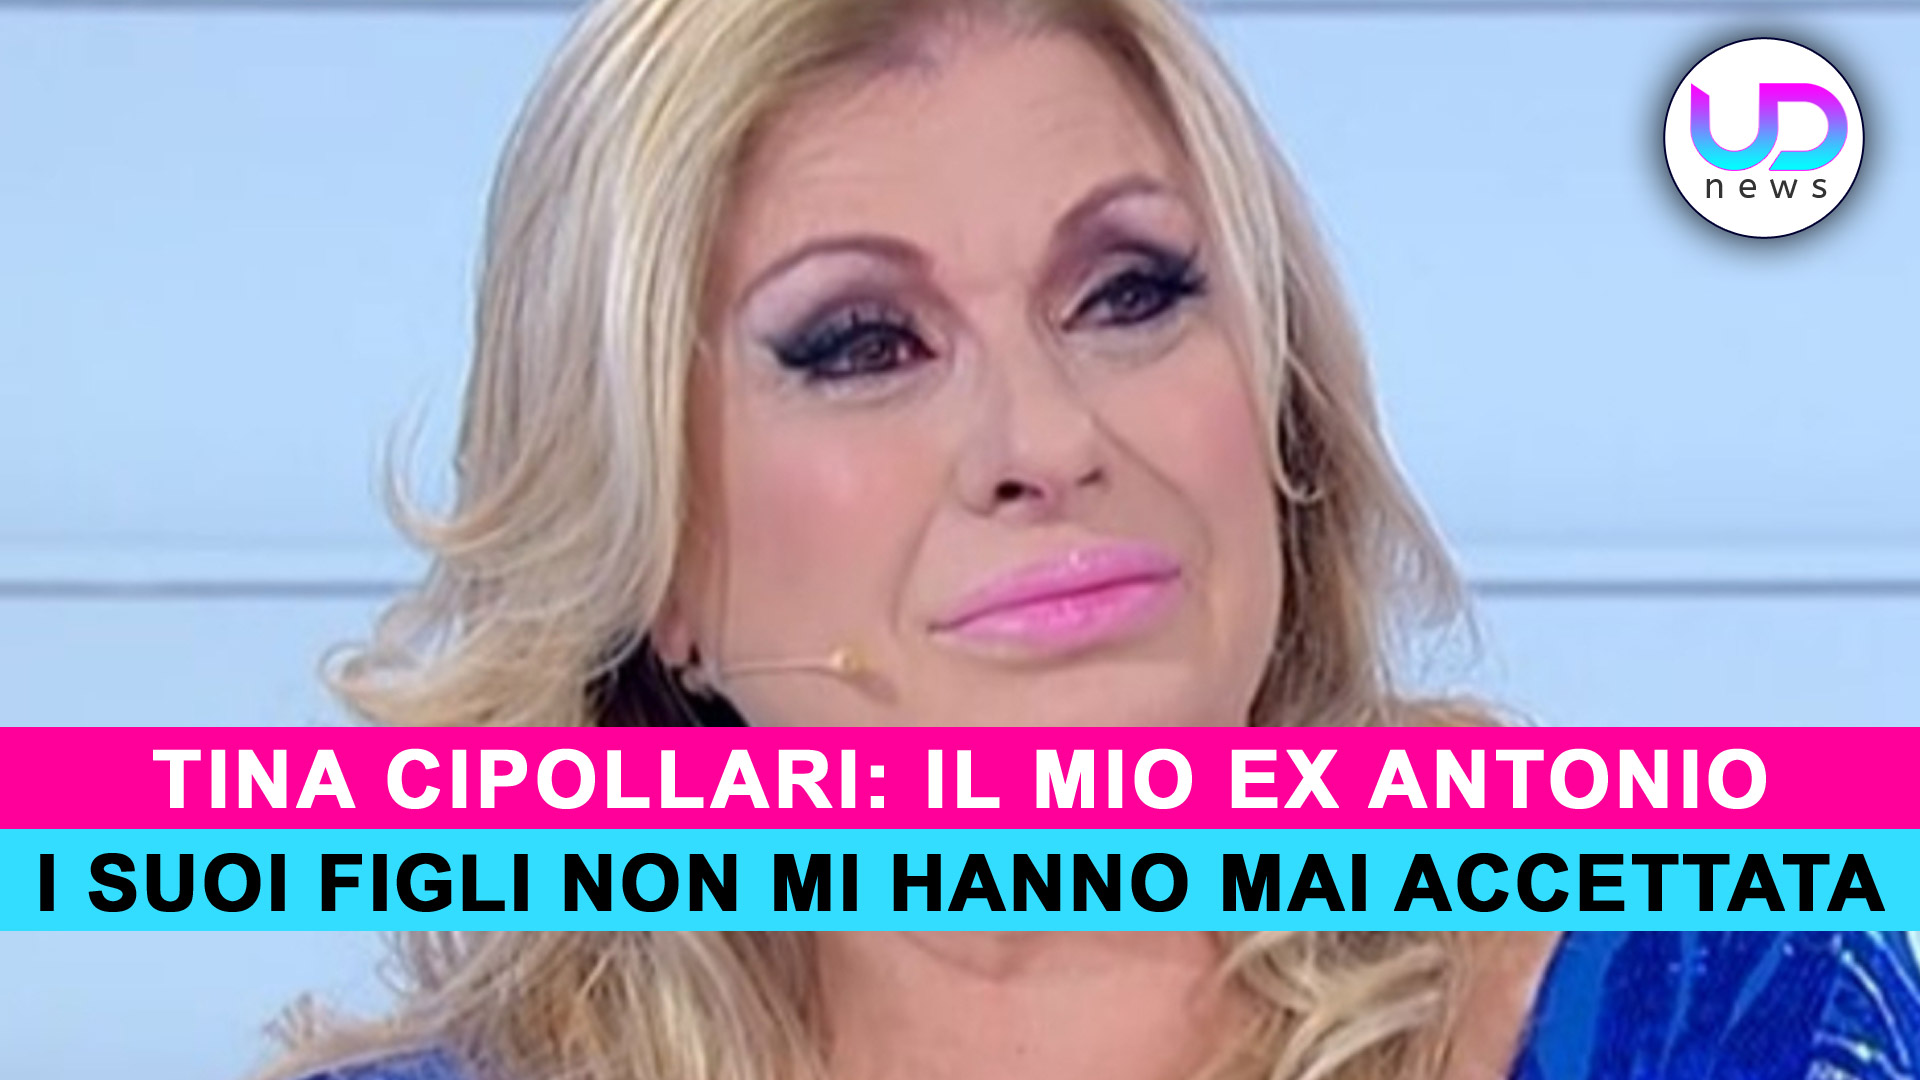 Tina Cipollari, L’Ex Antonio: I Suoi Figli Non Mi Hanno Mai Accettata!